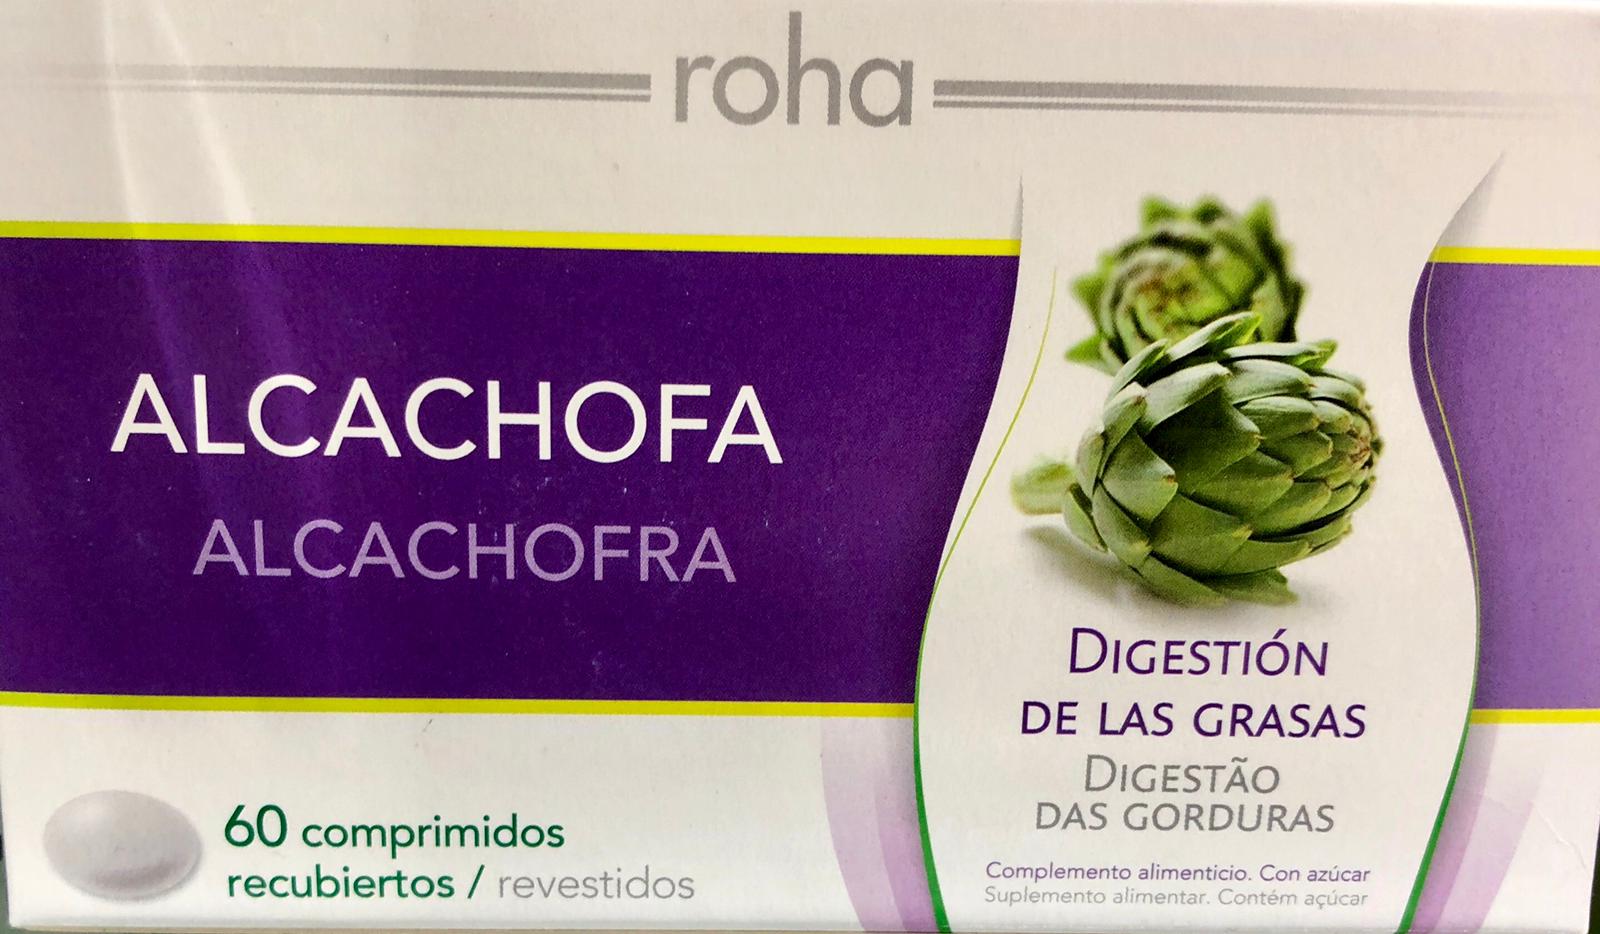 Roha alcachofa o a base de extractos de hojas de alcachofa, favorece la digestión de las grasas. La alcachofa facilita la digestión de las grasas.